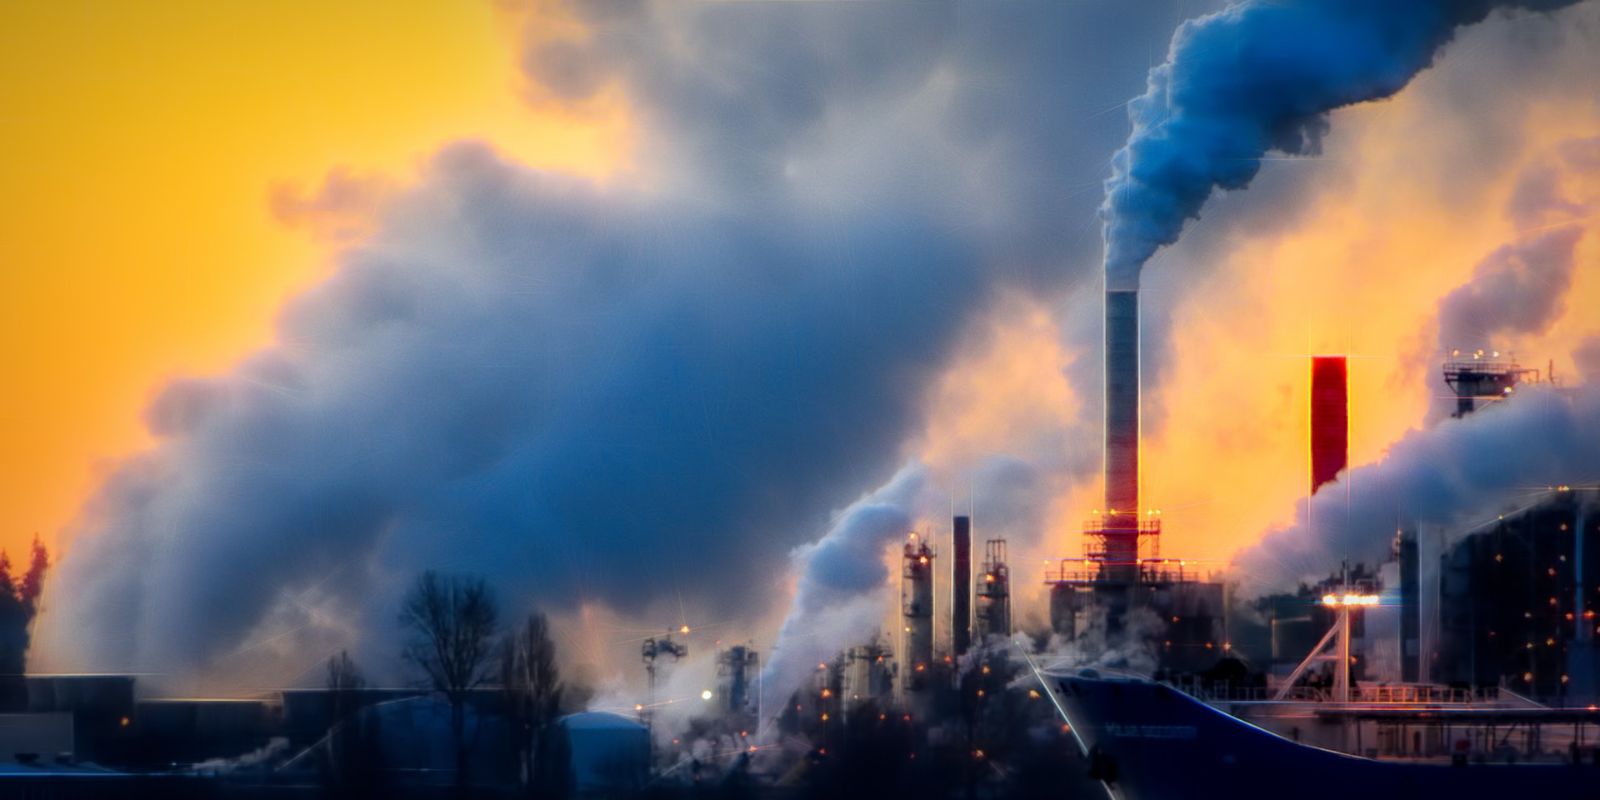 globális környezeti probléma a légszennyezés